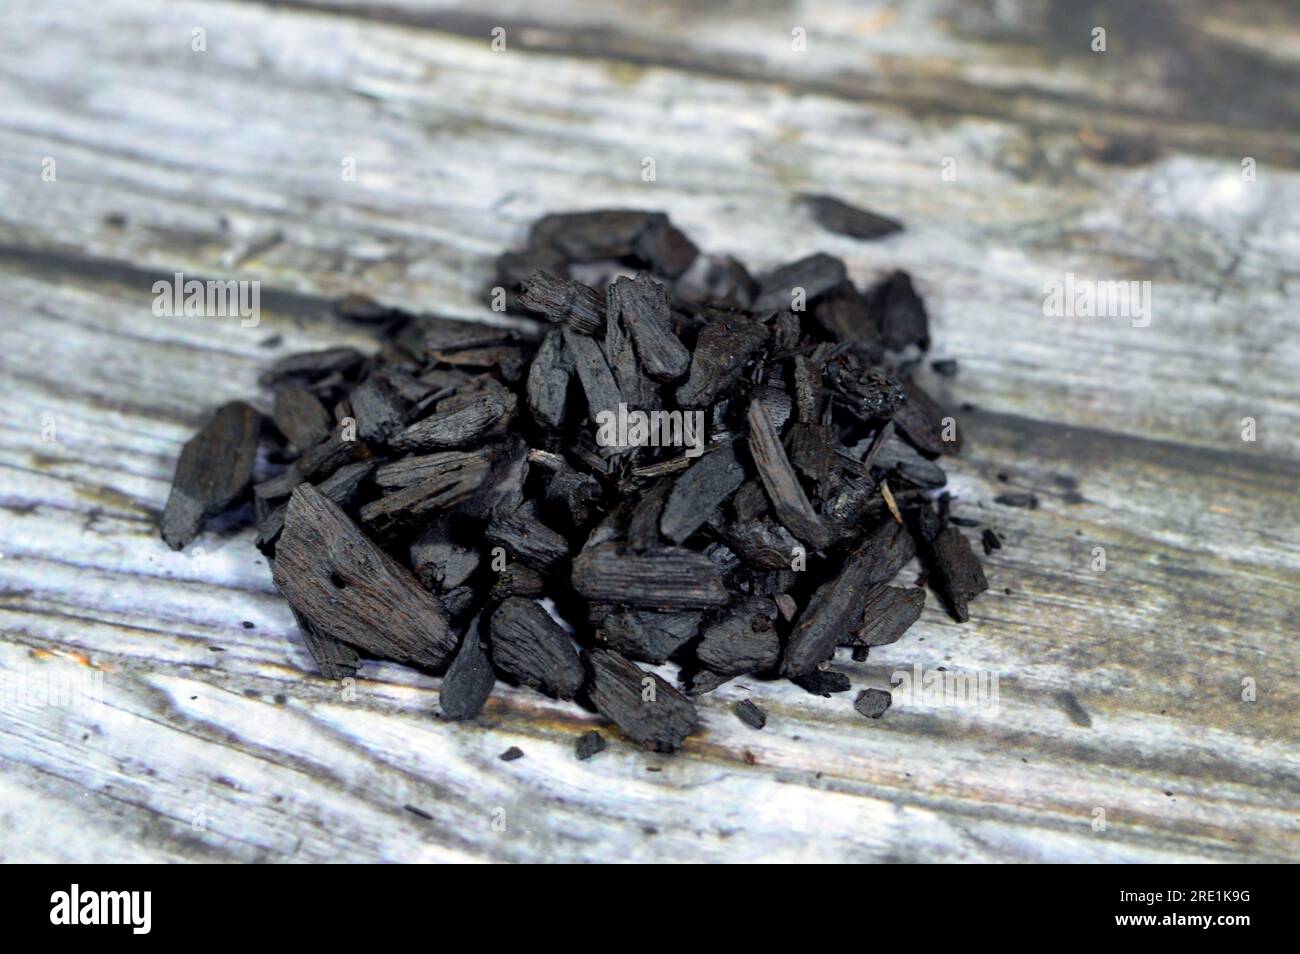 L'encens saoudien Oud, un matériau biotique aromatique qui libère de la fumée parfumée lorsqu'il est brûlé. Le terme est utilisé pour désigner soit la matière, soit l'arôme, composer Banque D'Images